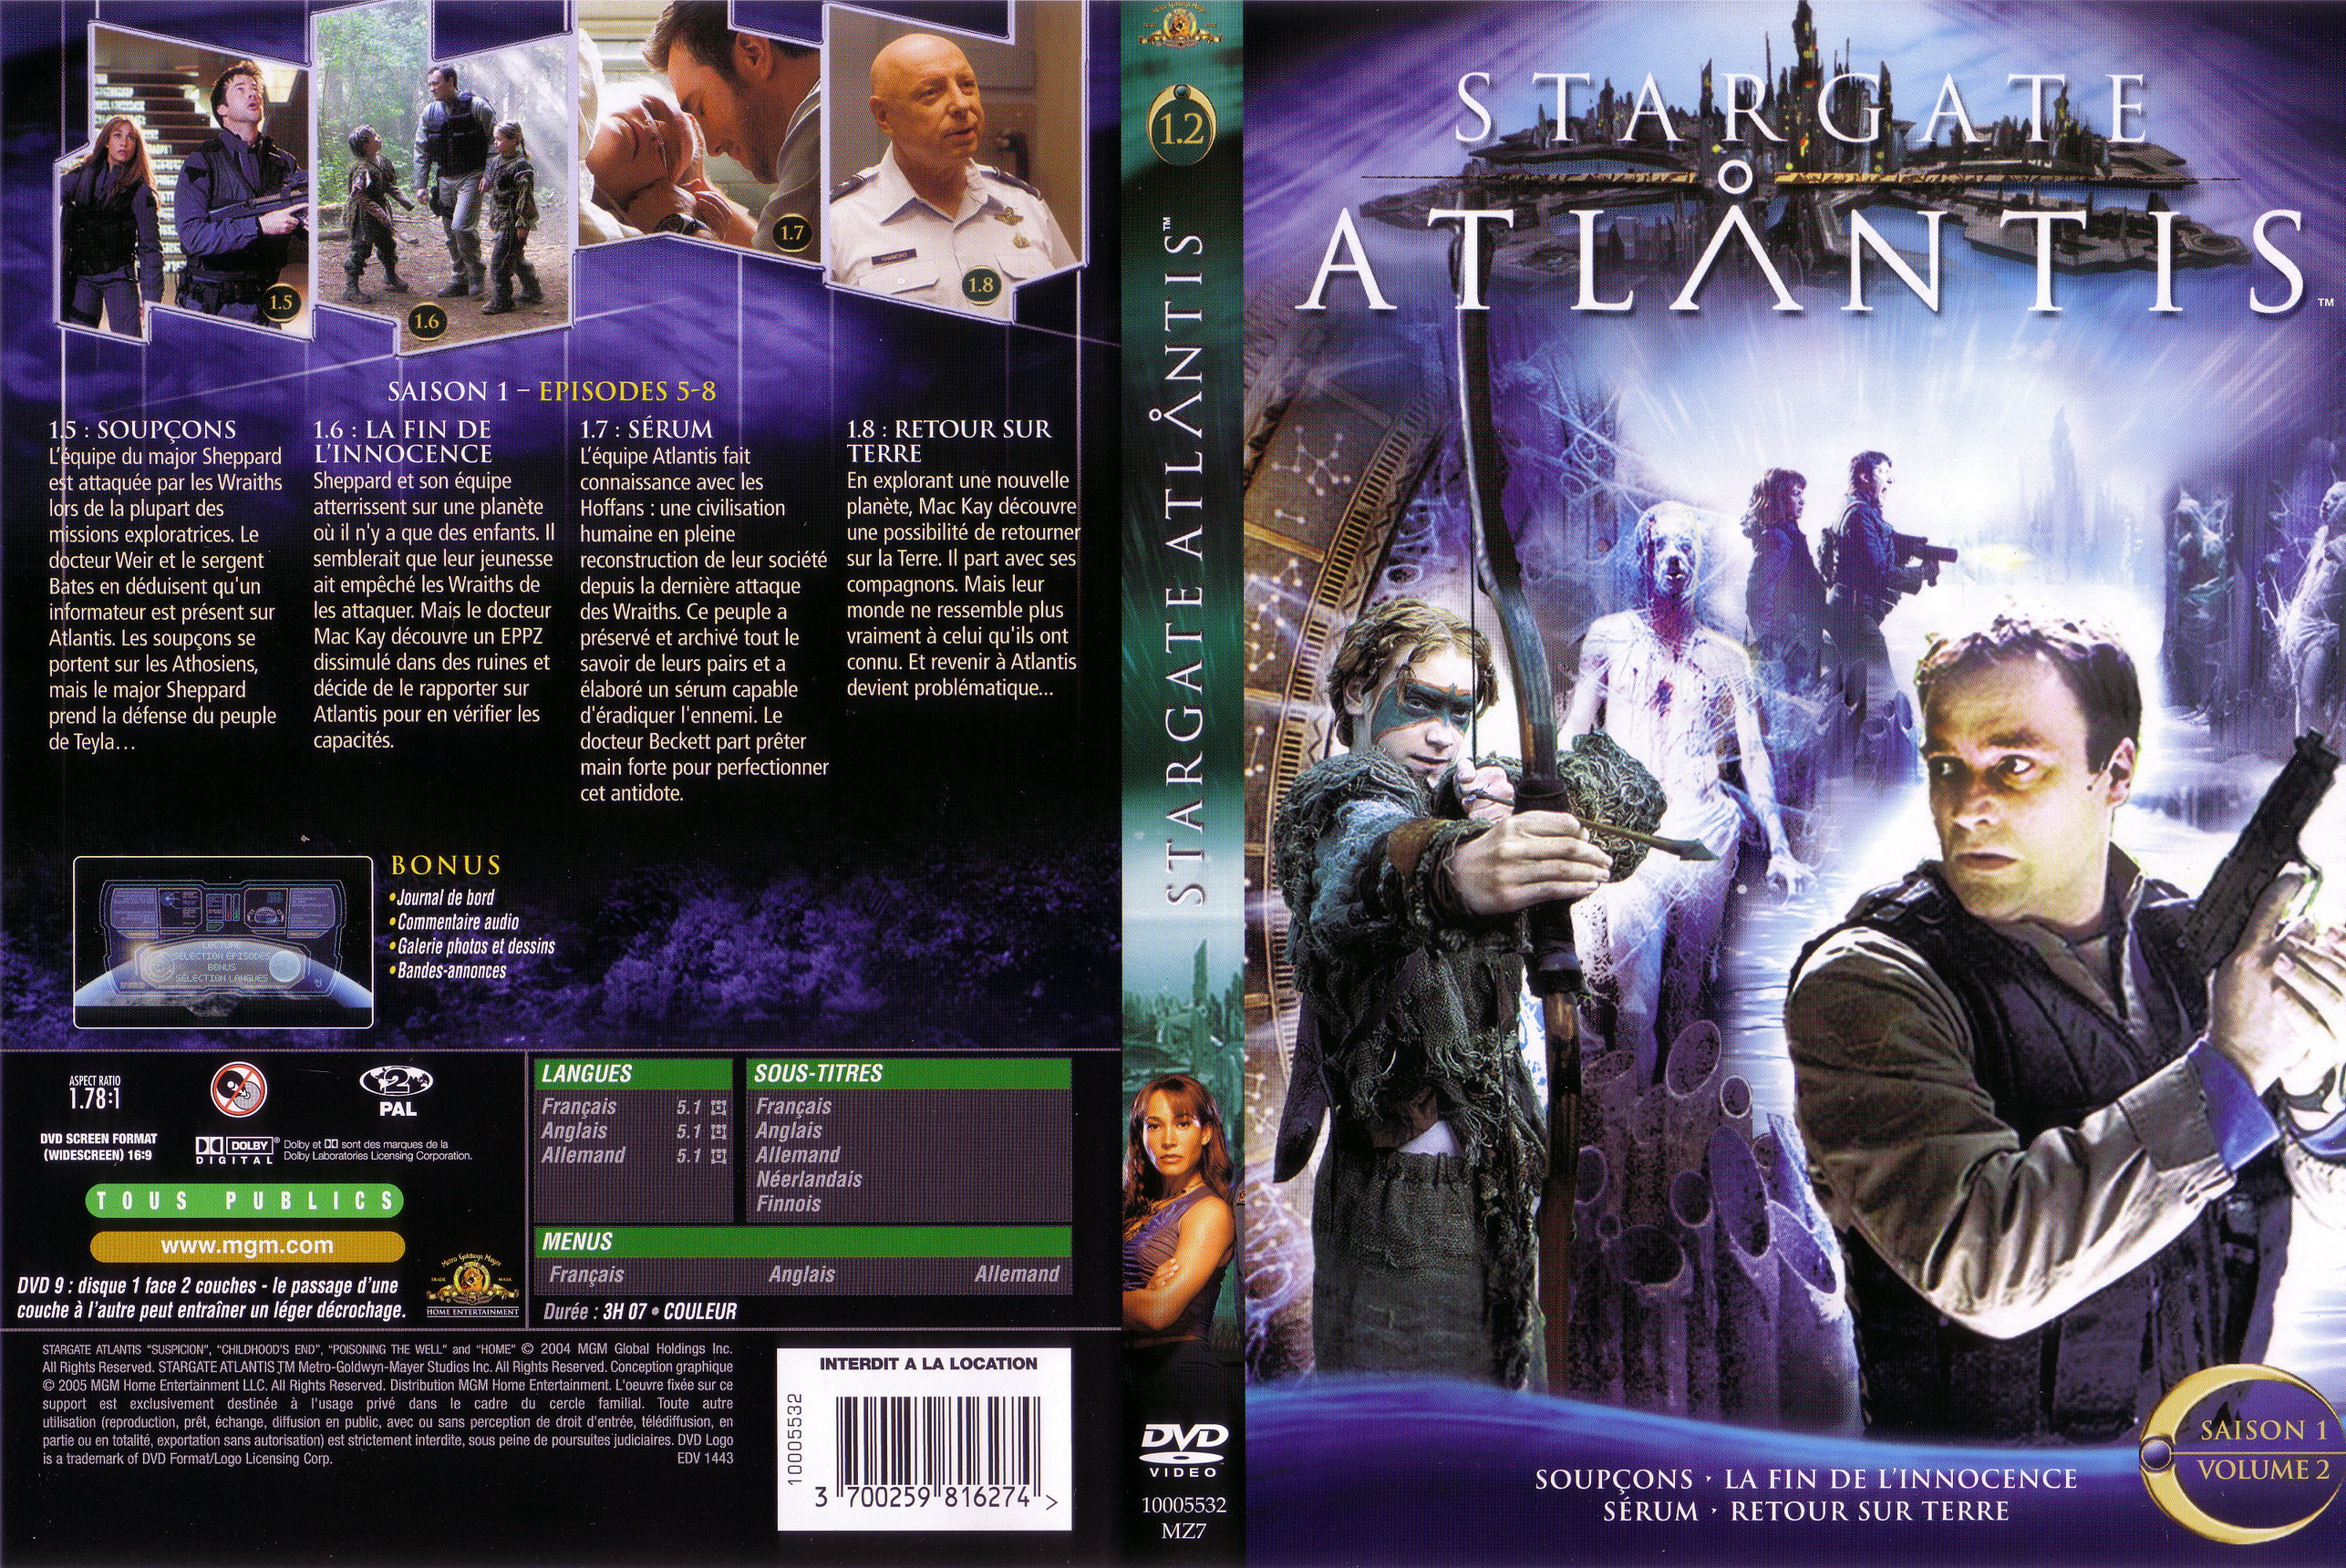 Jaquette DVD Stargate Atlantis saison 1 vol 2